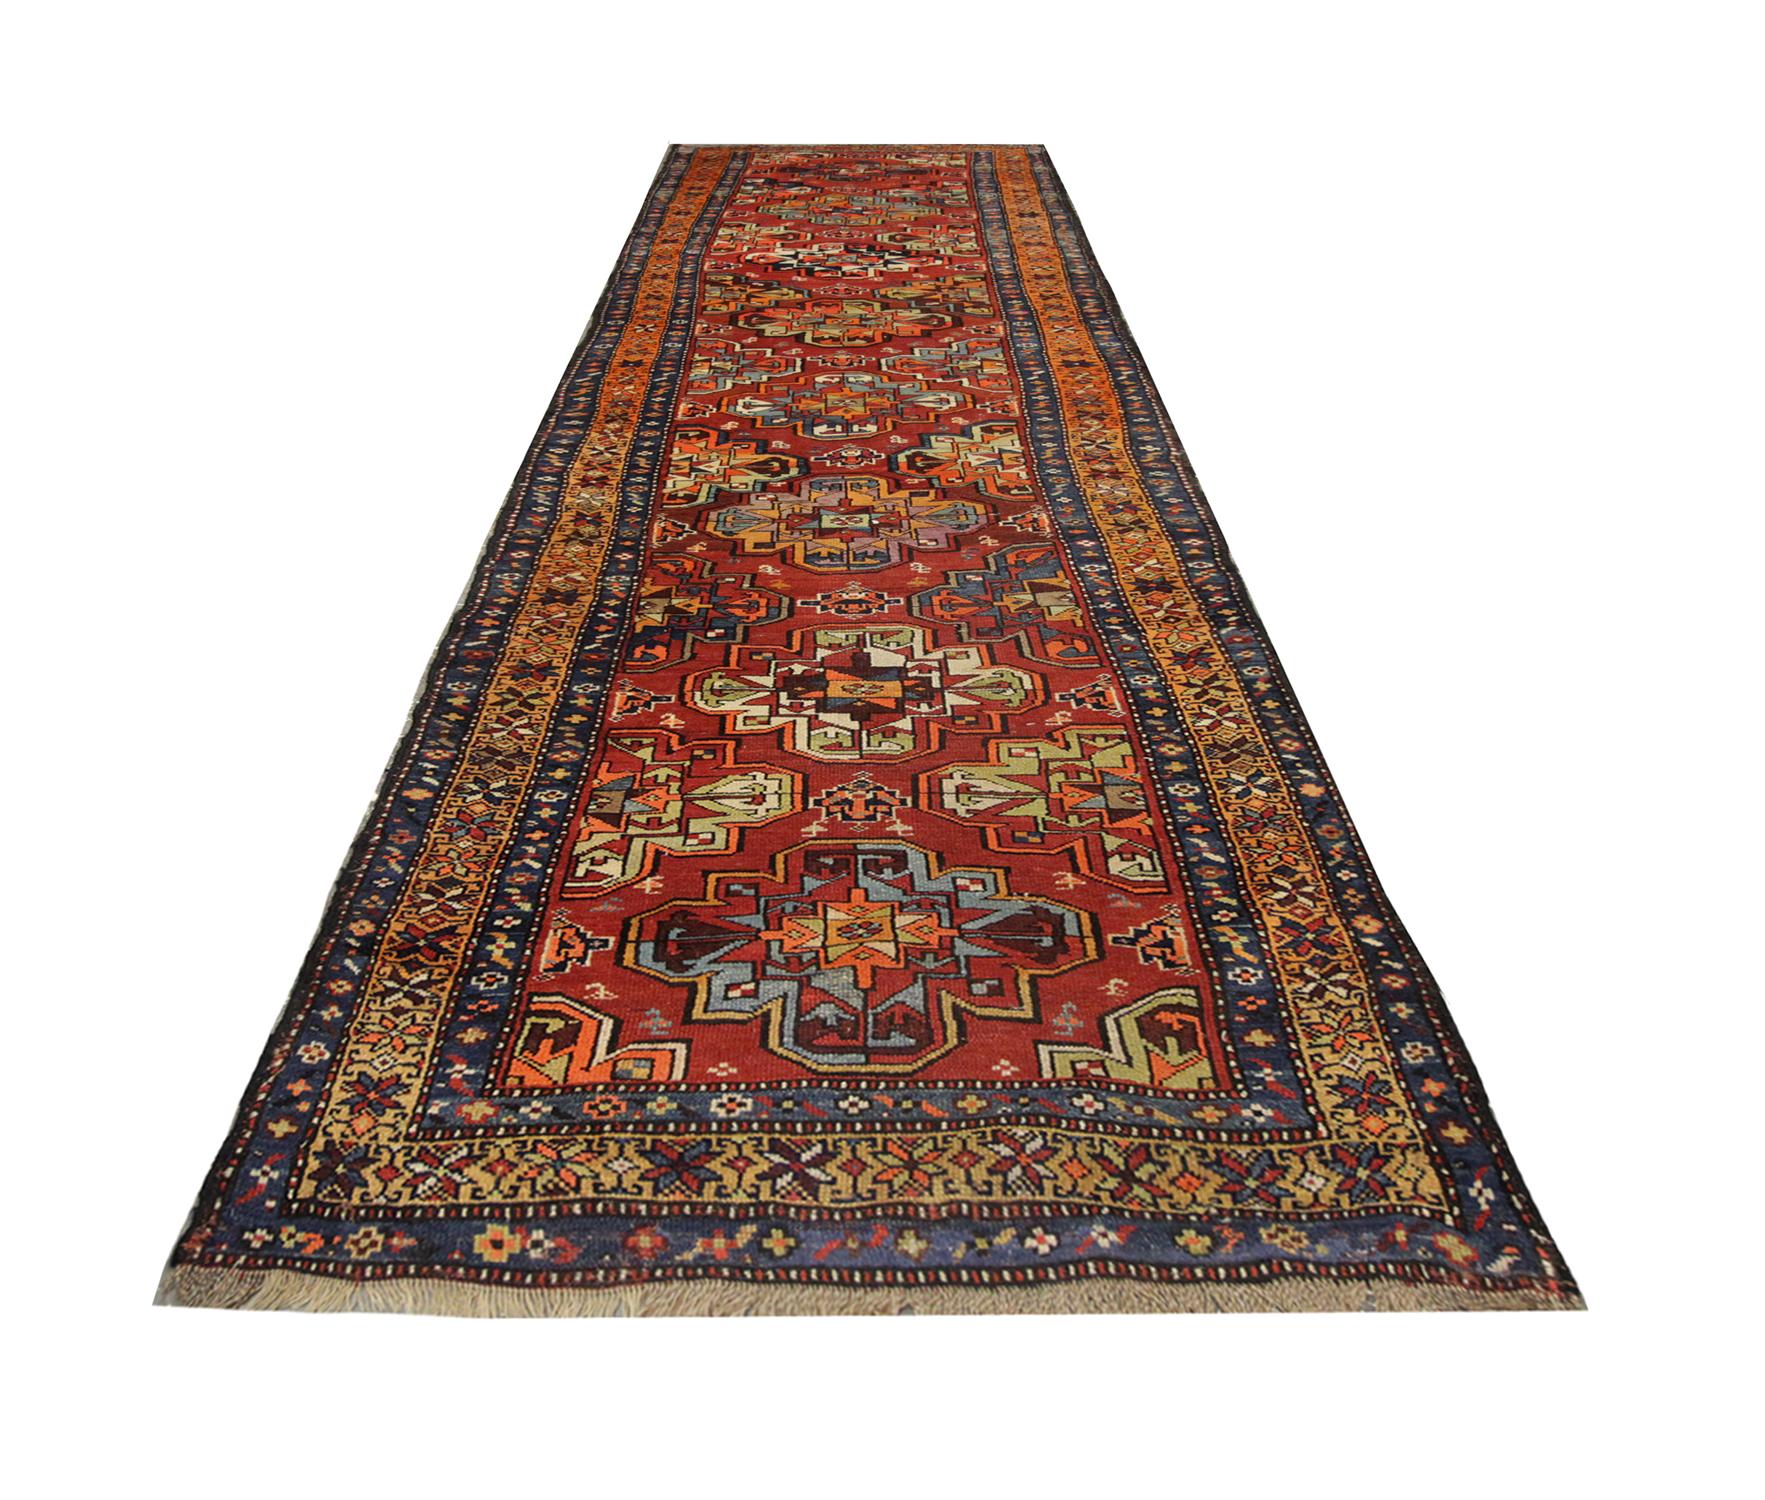 Cotton Antique Rug, Turkmen Oriental Runner, Living Room Carpet Runner For Sale